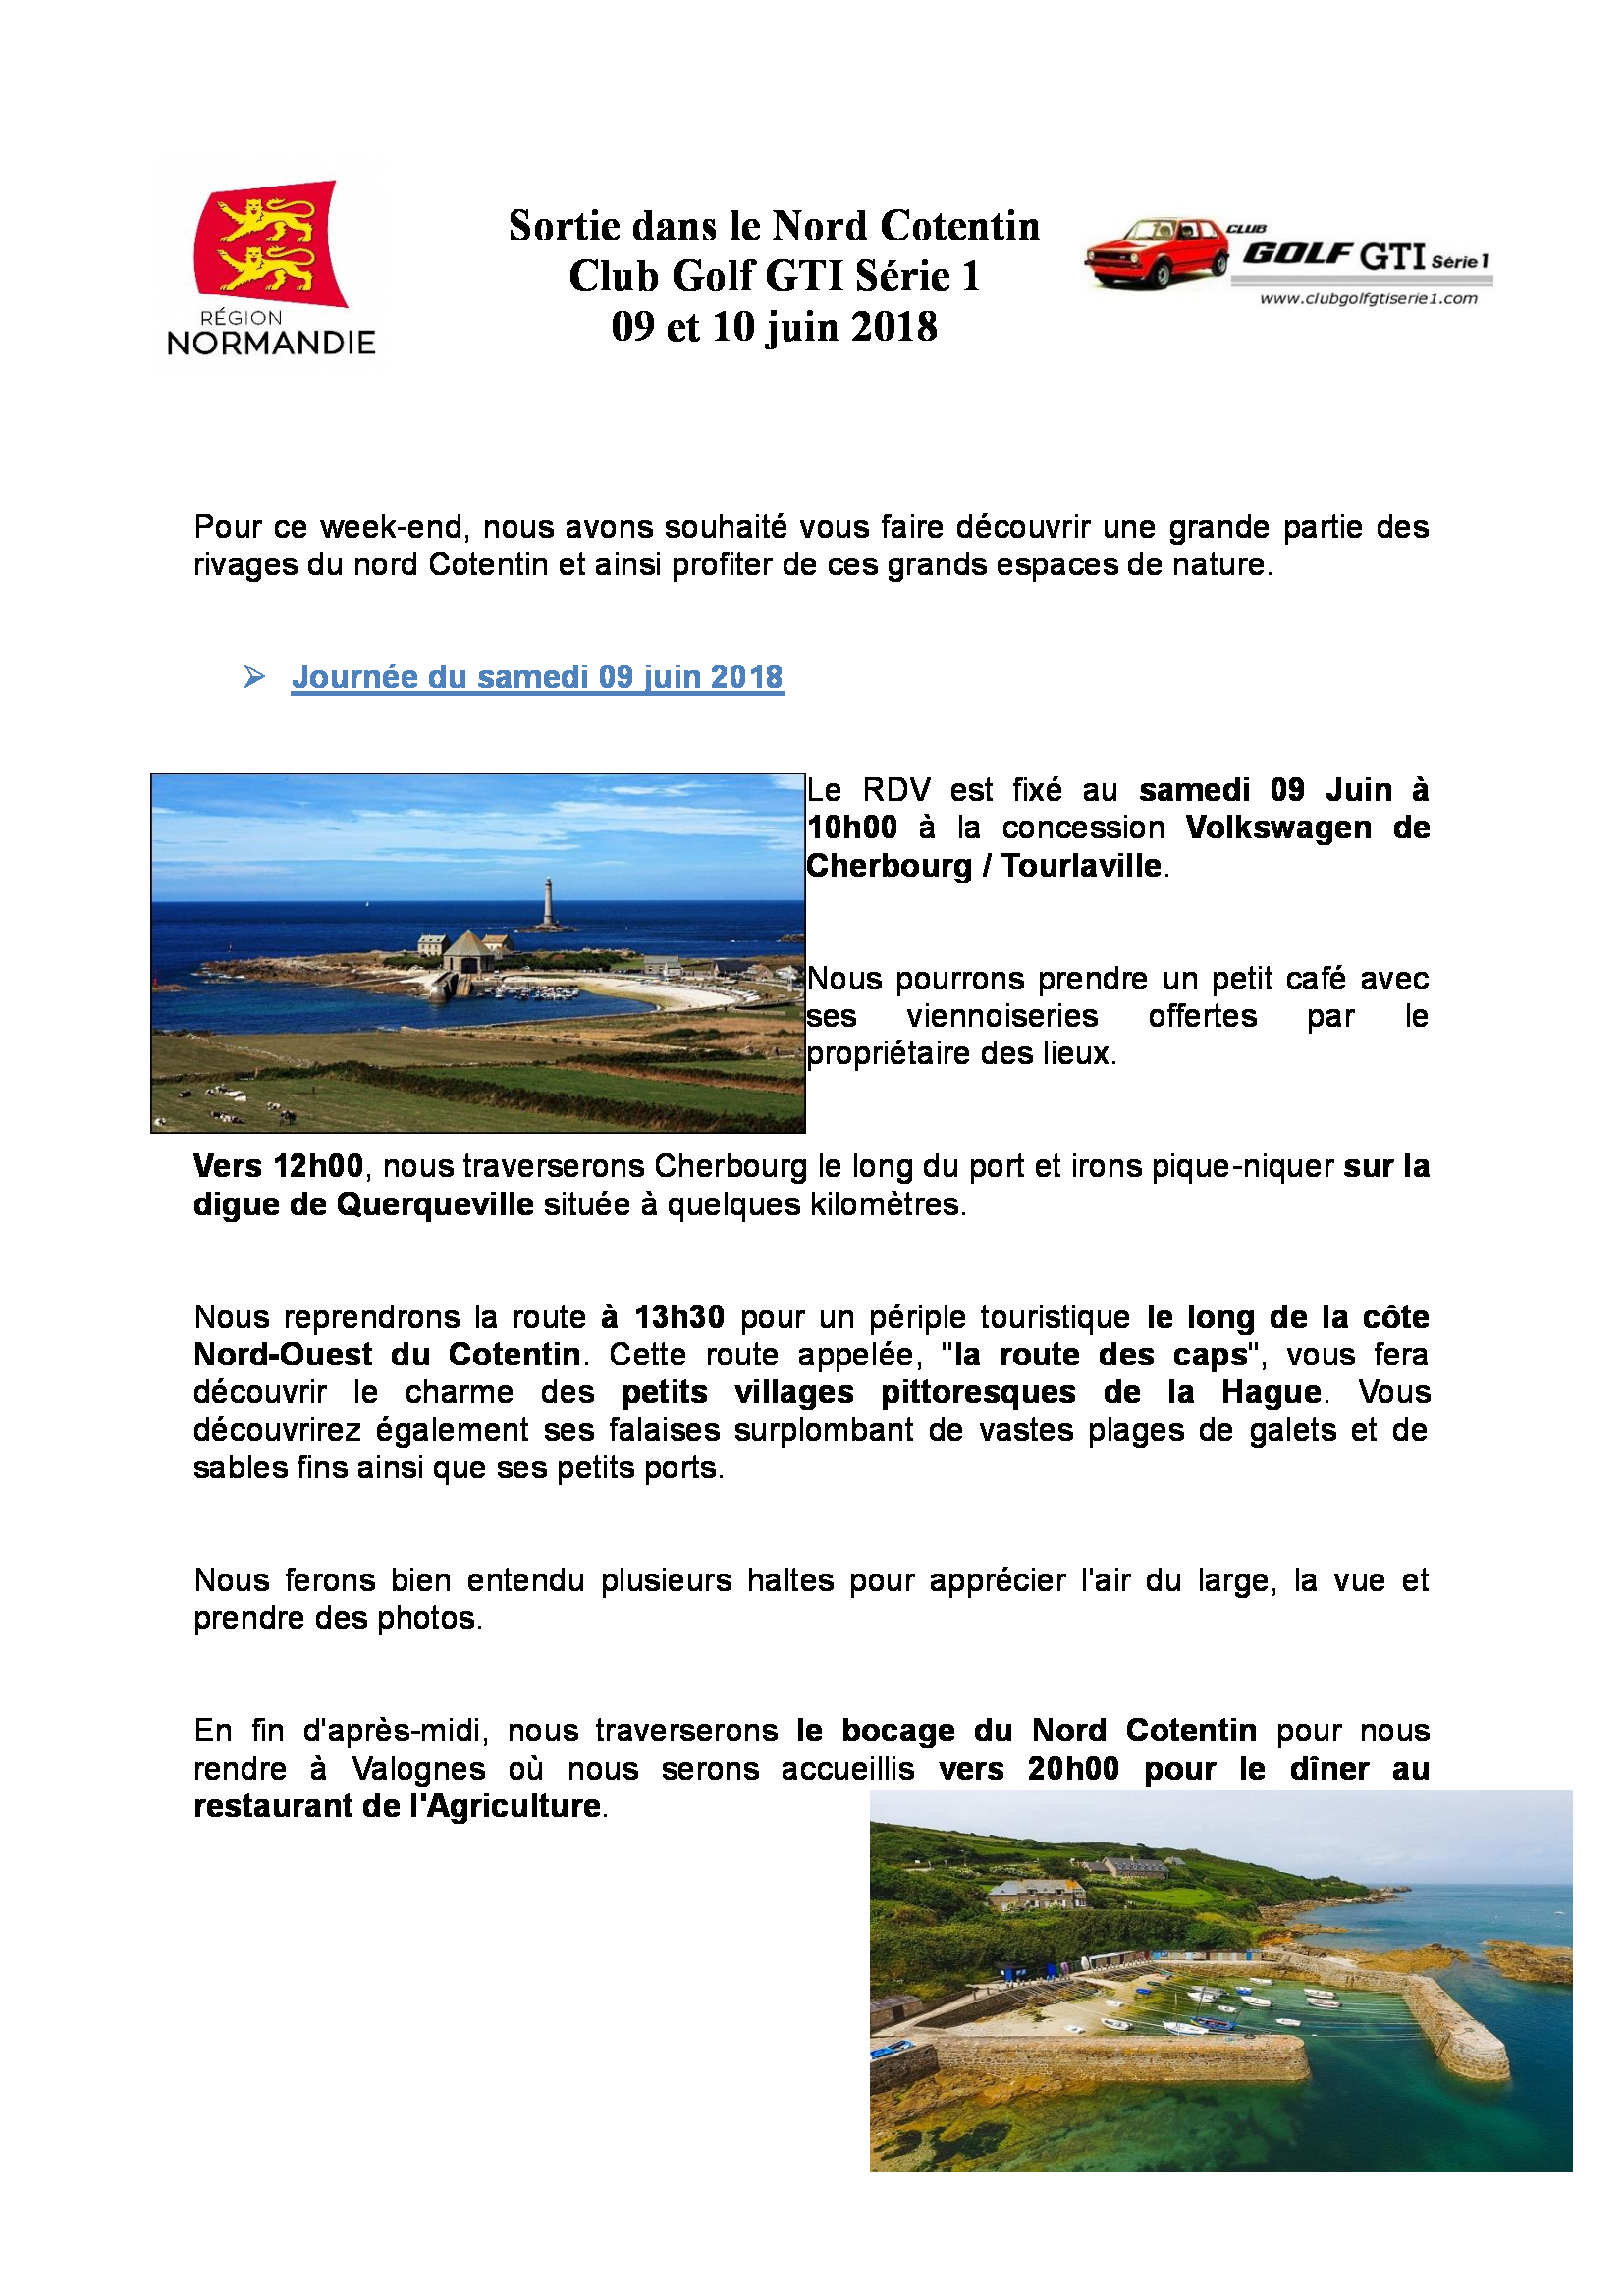 Balade du 09 et 10 juin 2018 dans le Nord Cotentin - Page 2 18042909310721506915691519